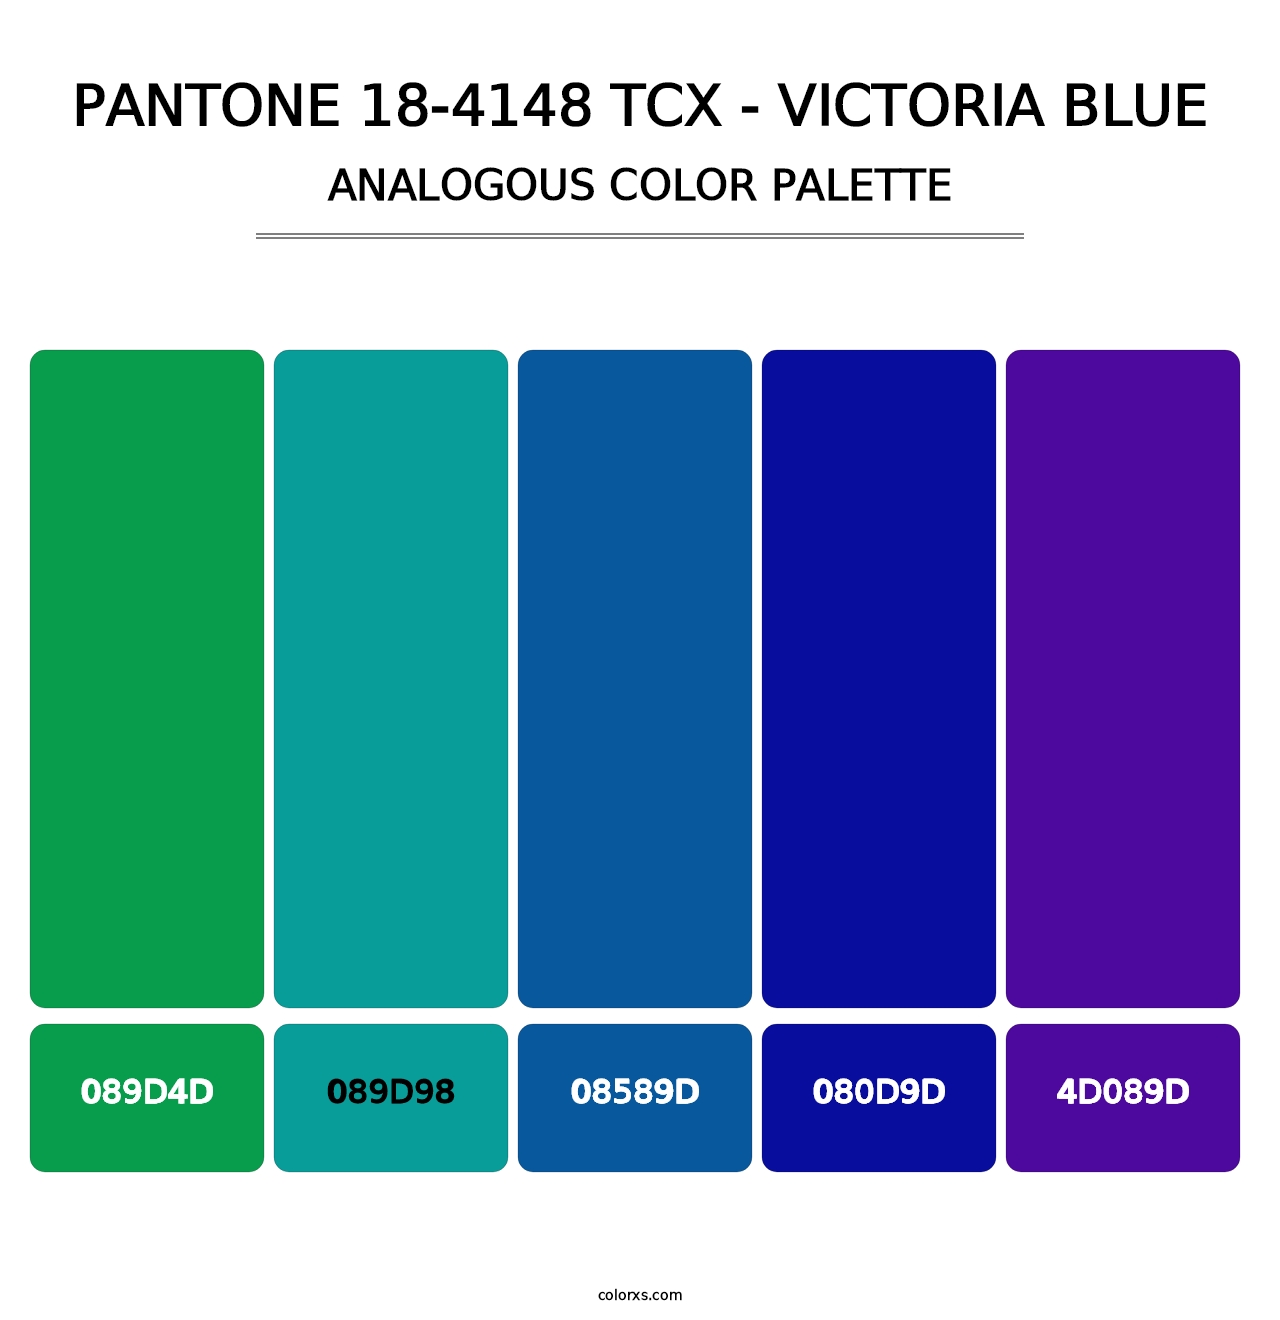 PANTONE 18-4148 TCX - Victoria Blue - Analogous Color Palette